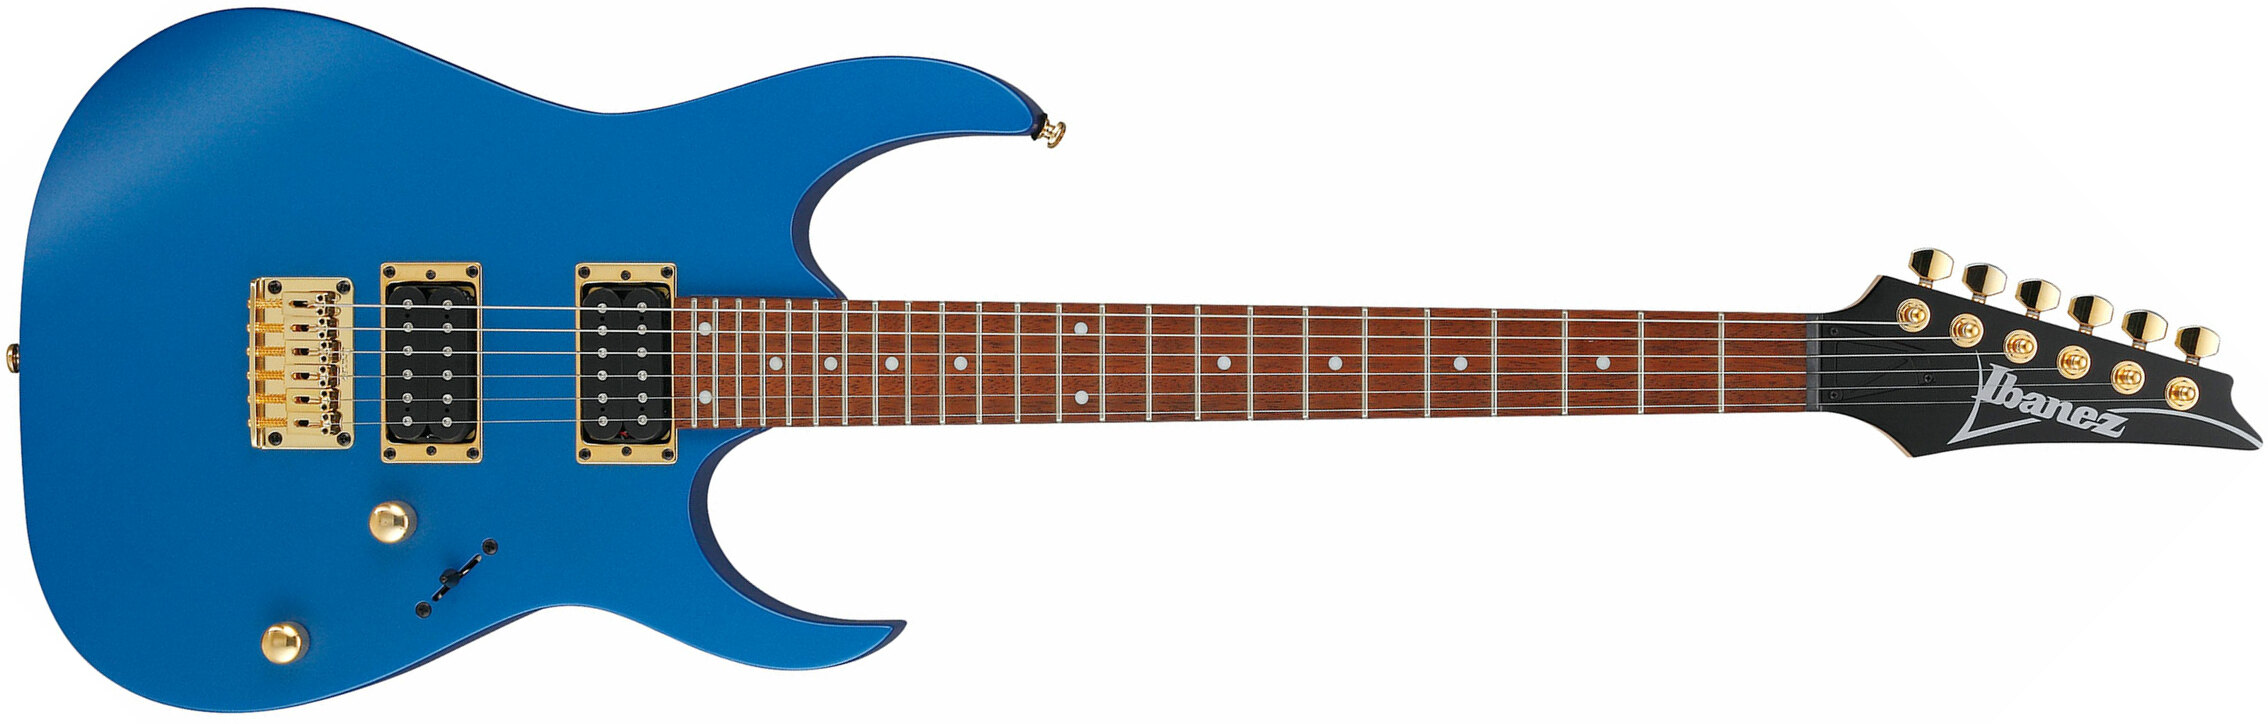 Ibanez Rg421g Lbm Standard Ht Hh Jat - Laser Blue Matte - Guitarra eléctrica con forma de str. - Main picture